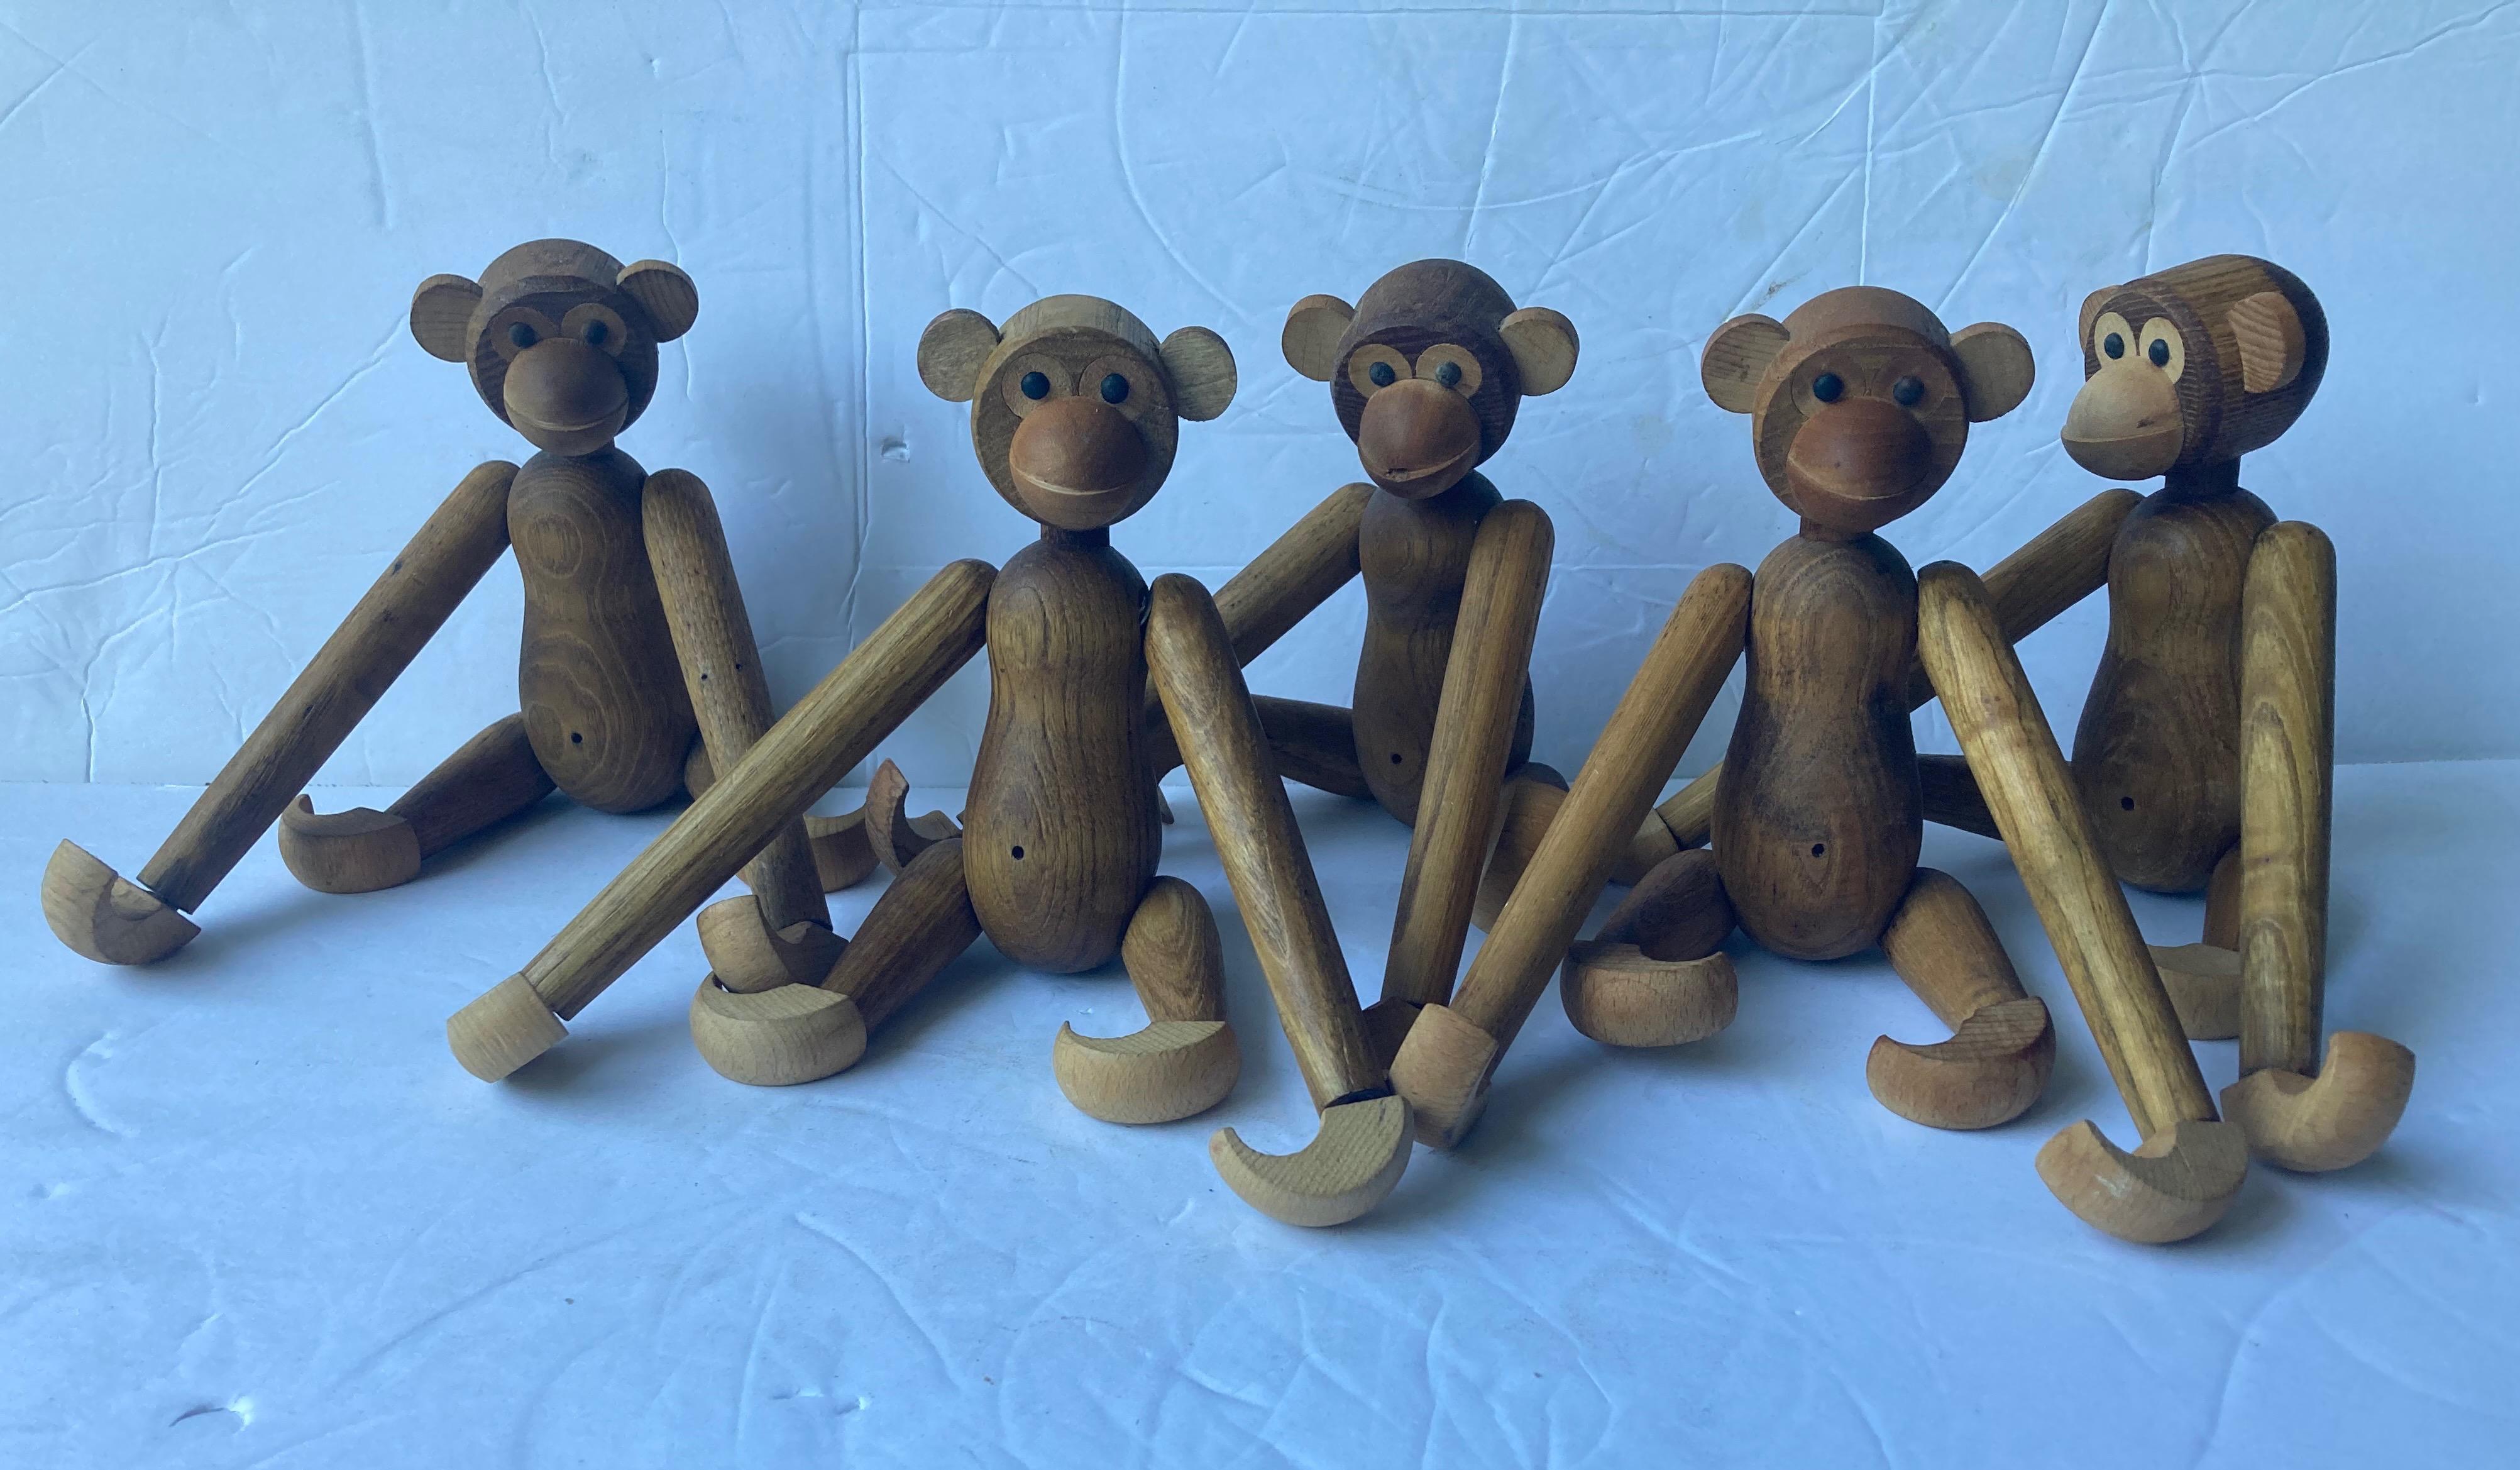 Si mignonne petite collection de jouets/sculptures de singes en bois. Ces pièces ont été réalisées au Japon dans le style de Kay Bojesen.